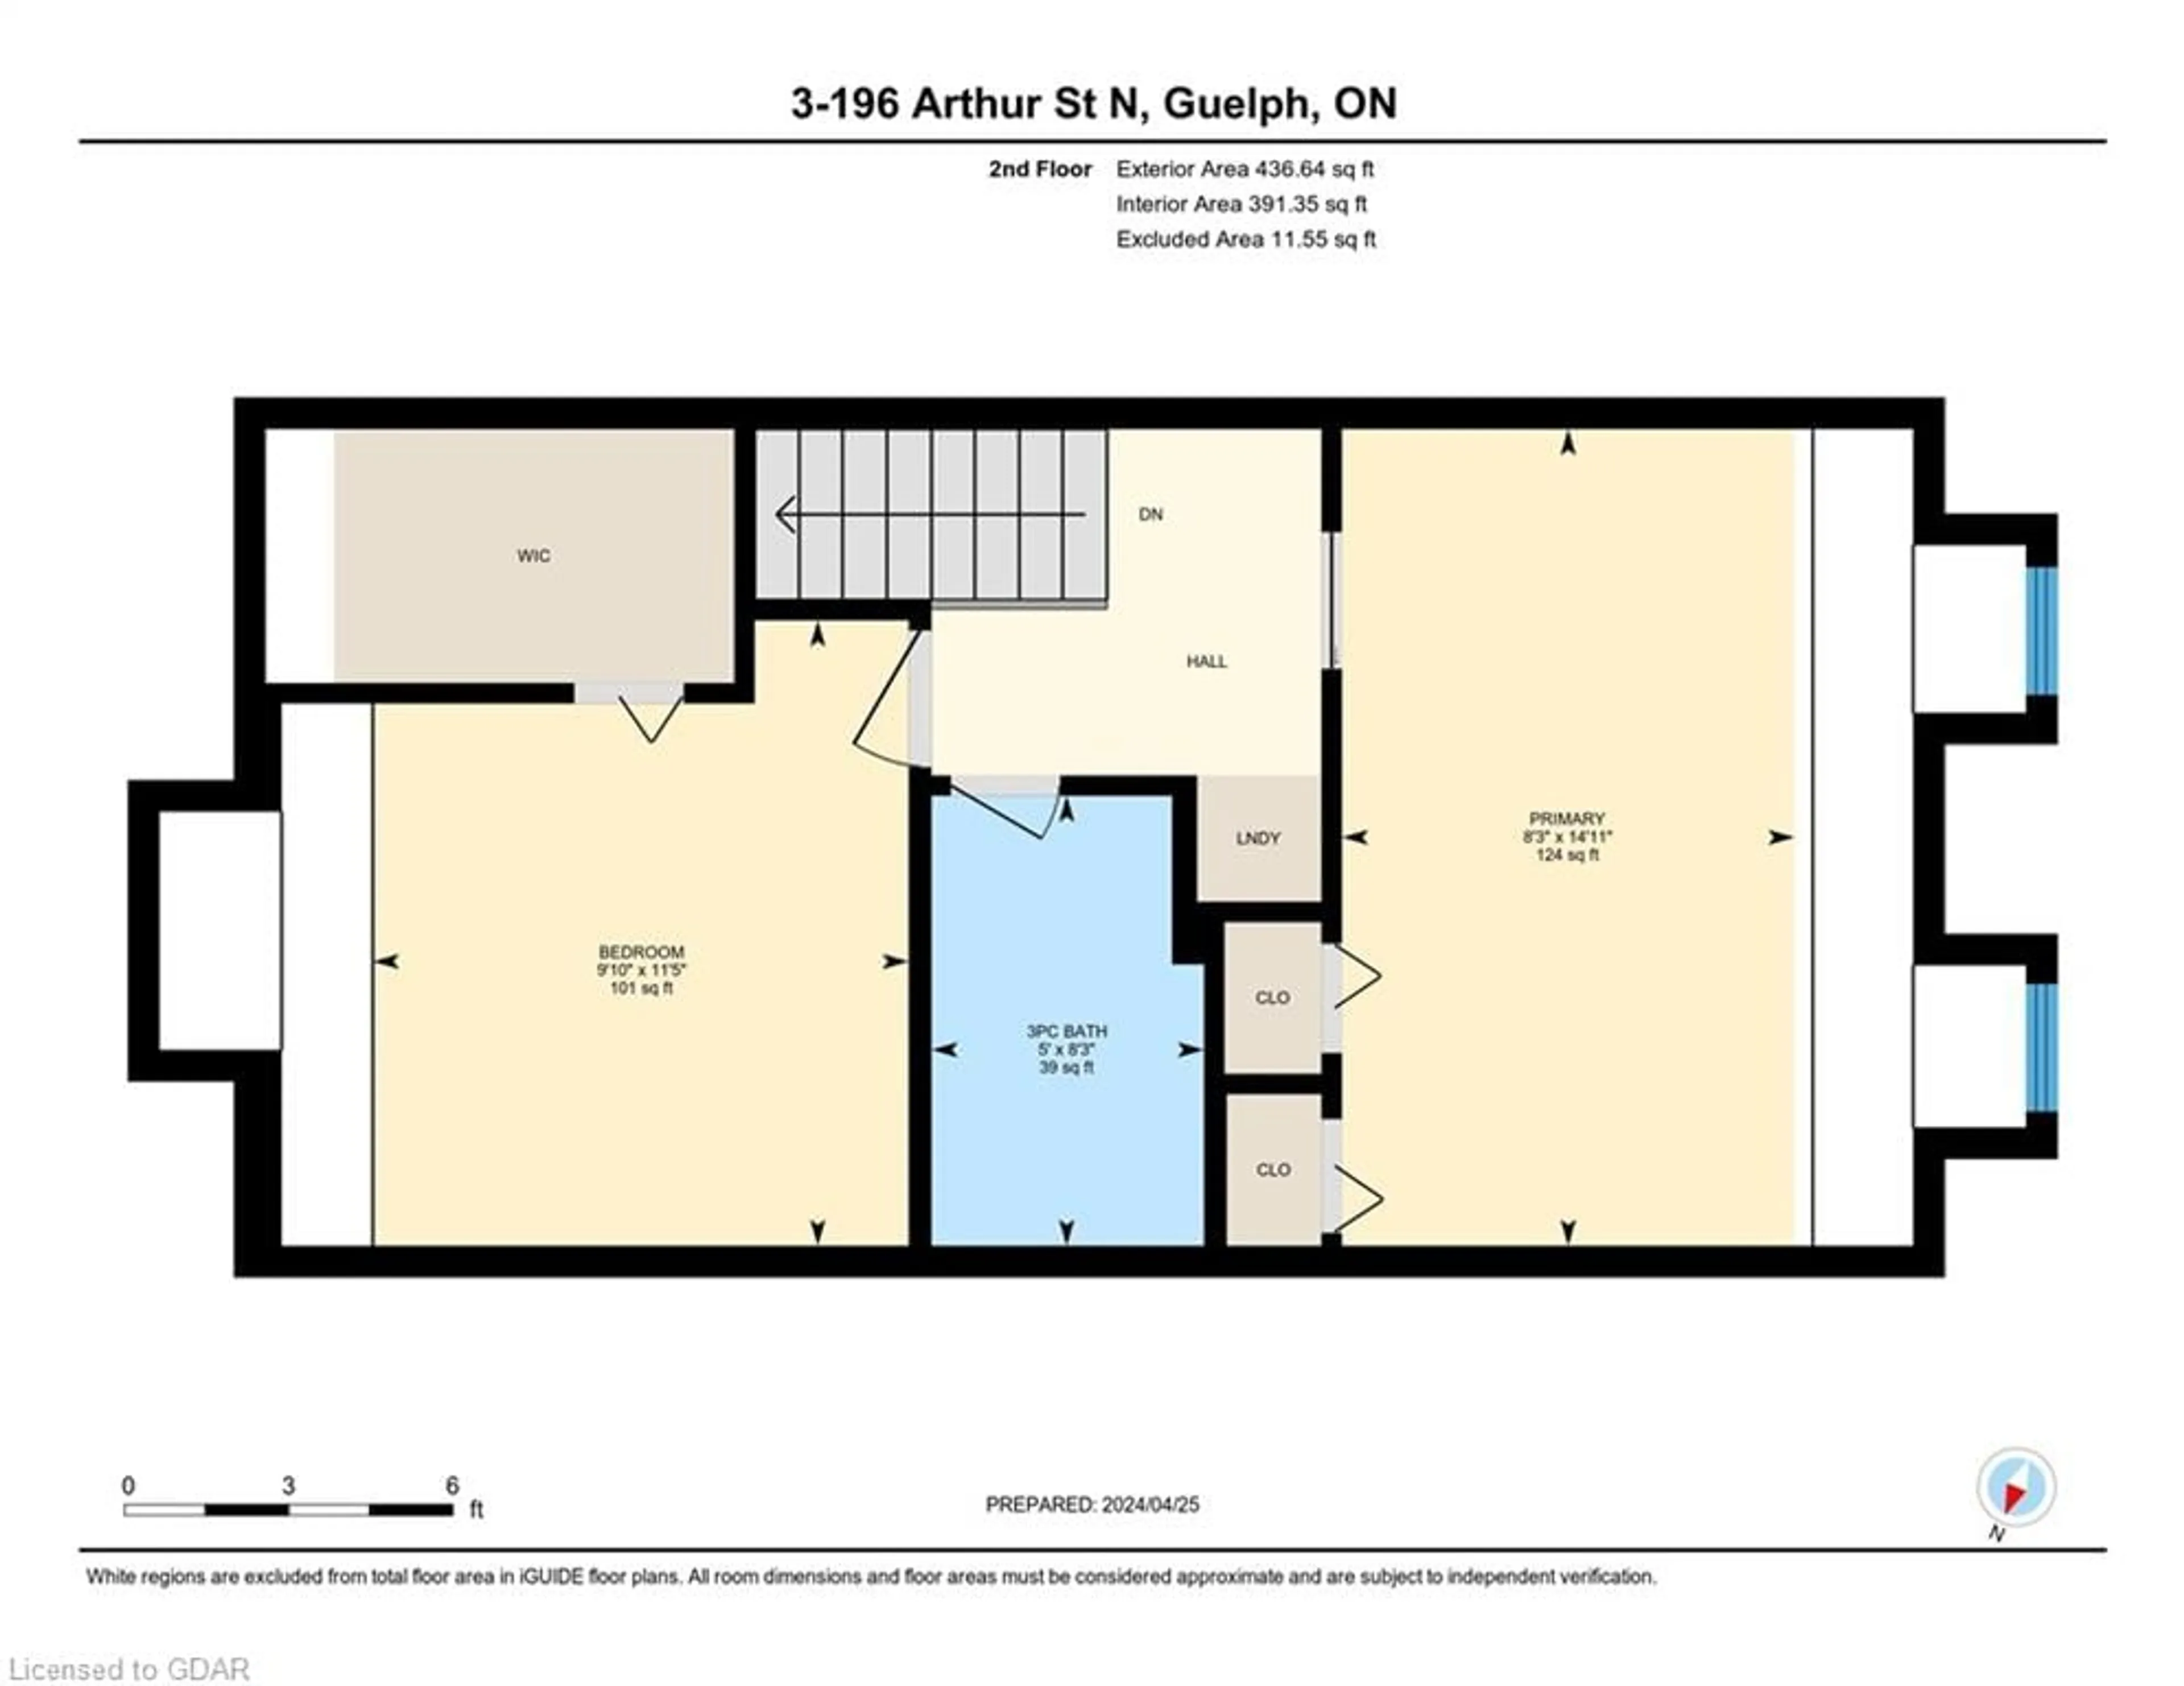 Floor plan for 196 Arthur St #3, Guelph Ontario N1E 4V8